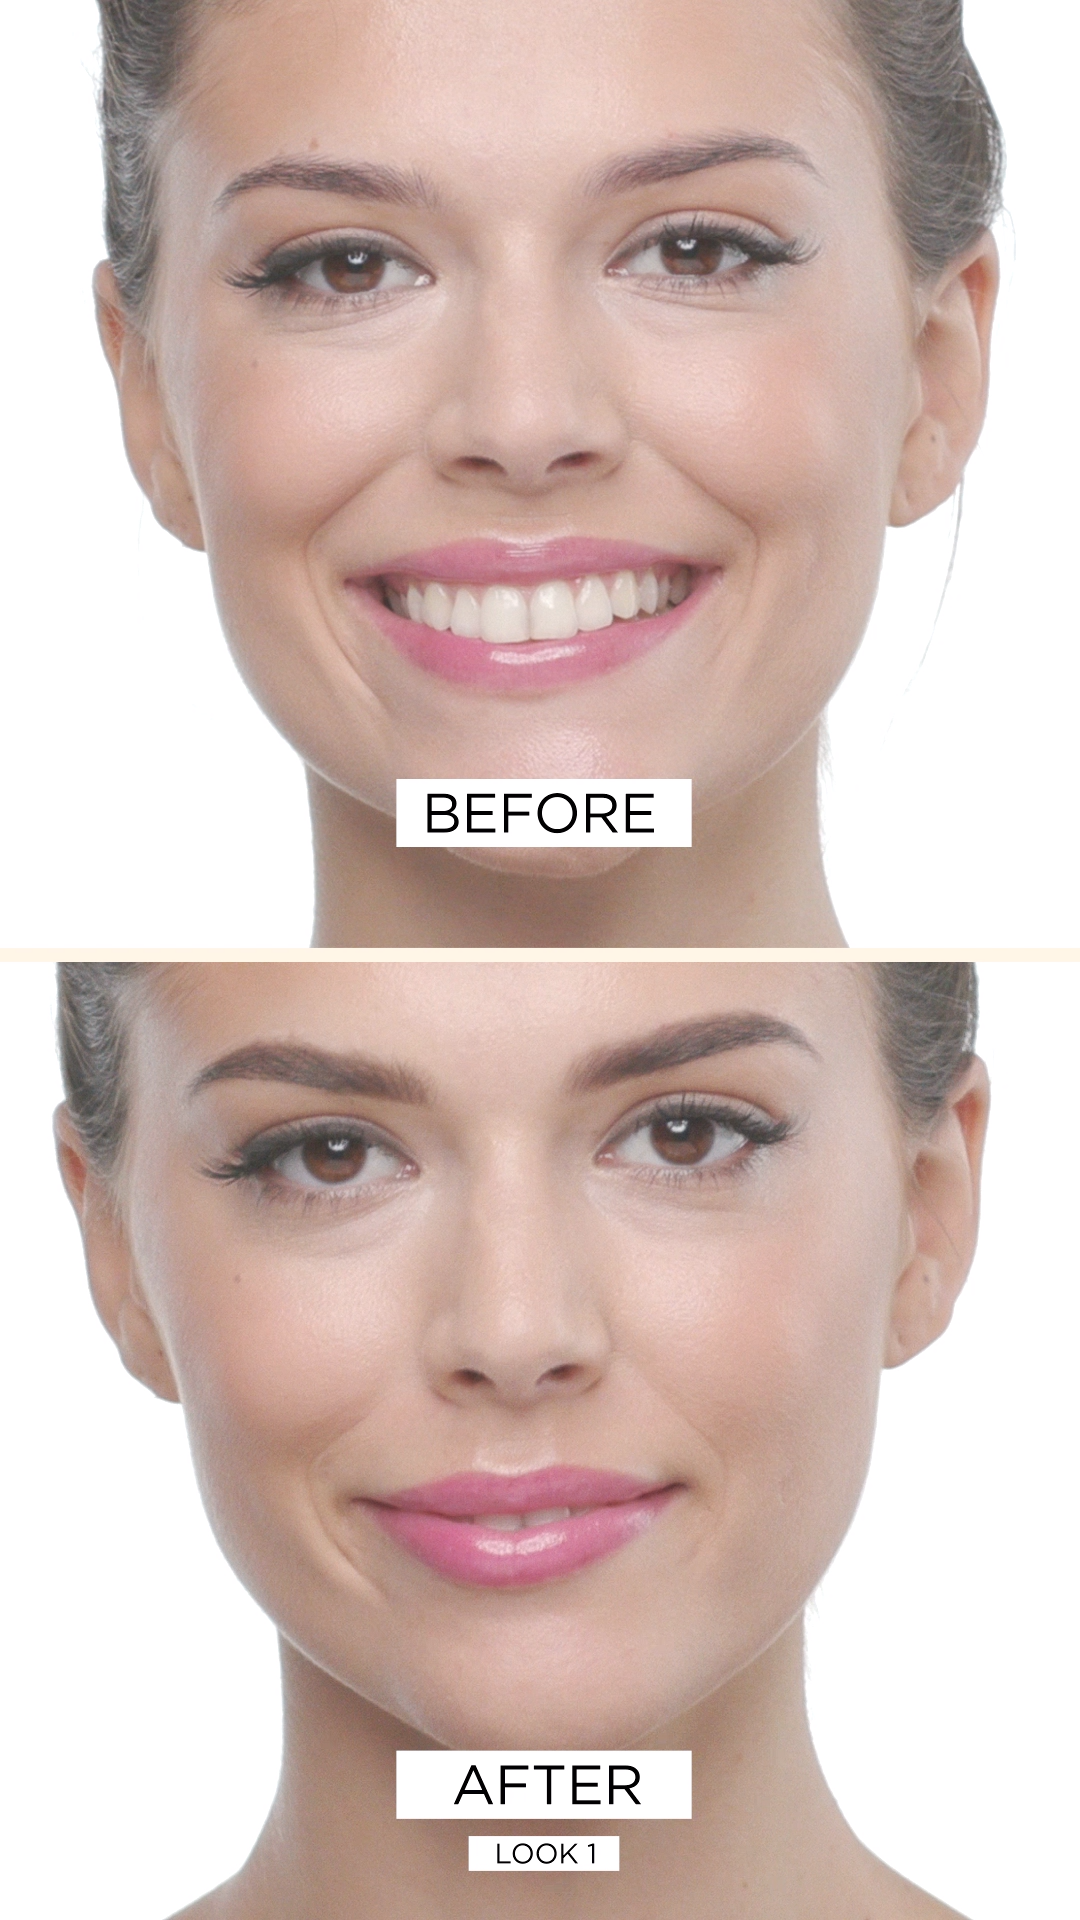 Augenbrauen Looks | ARTDECO - Augenbrauen Looks | ARTDECO -   12 beauty Treatments poster ideas